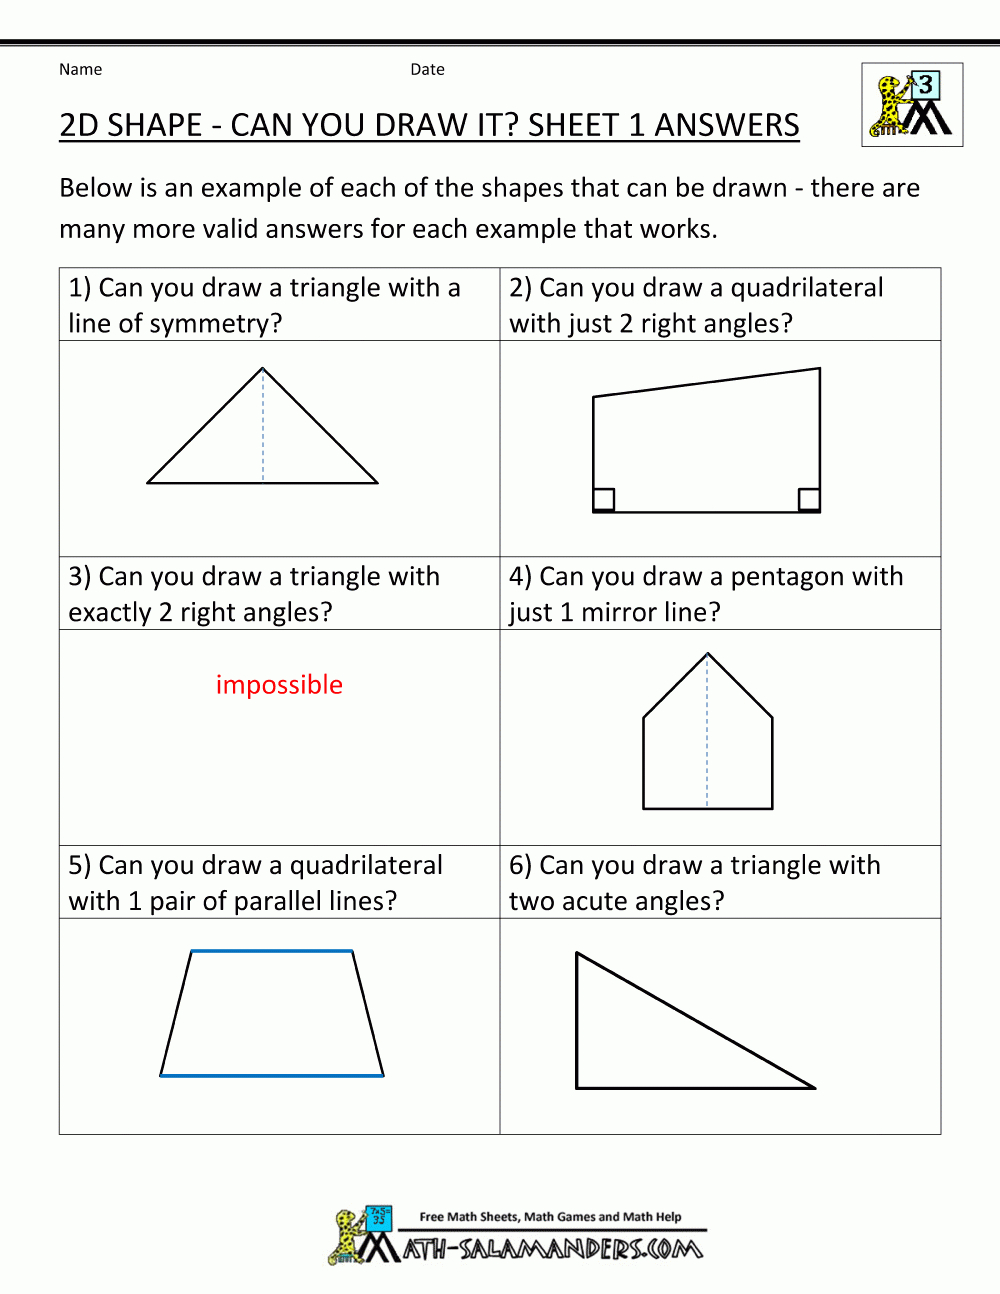 Free Printable Geometry Worksheets 3Rd Grade - Free Printable Geometry Worksheets For 3Rd Grade